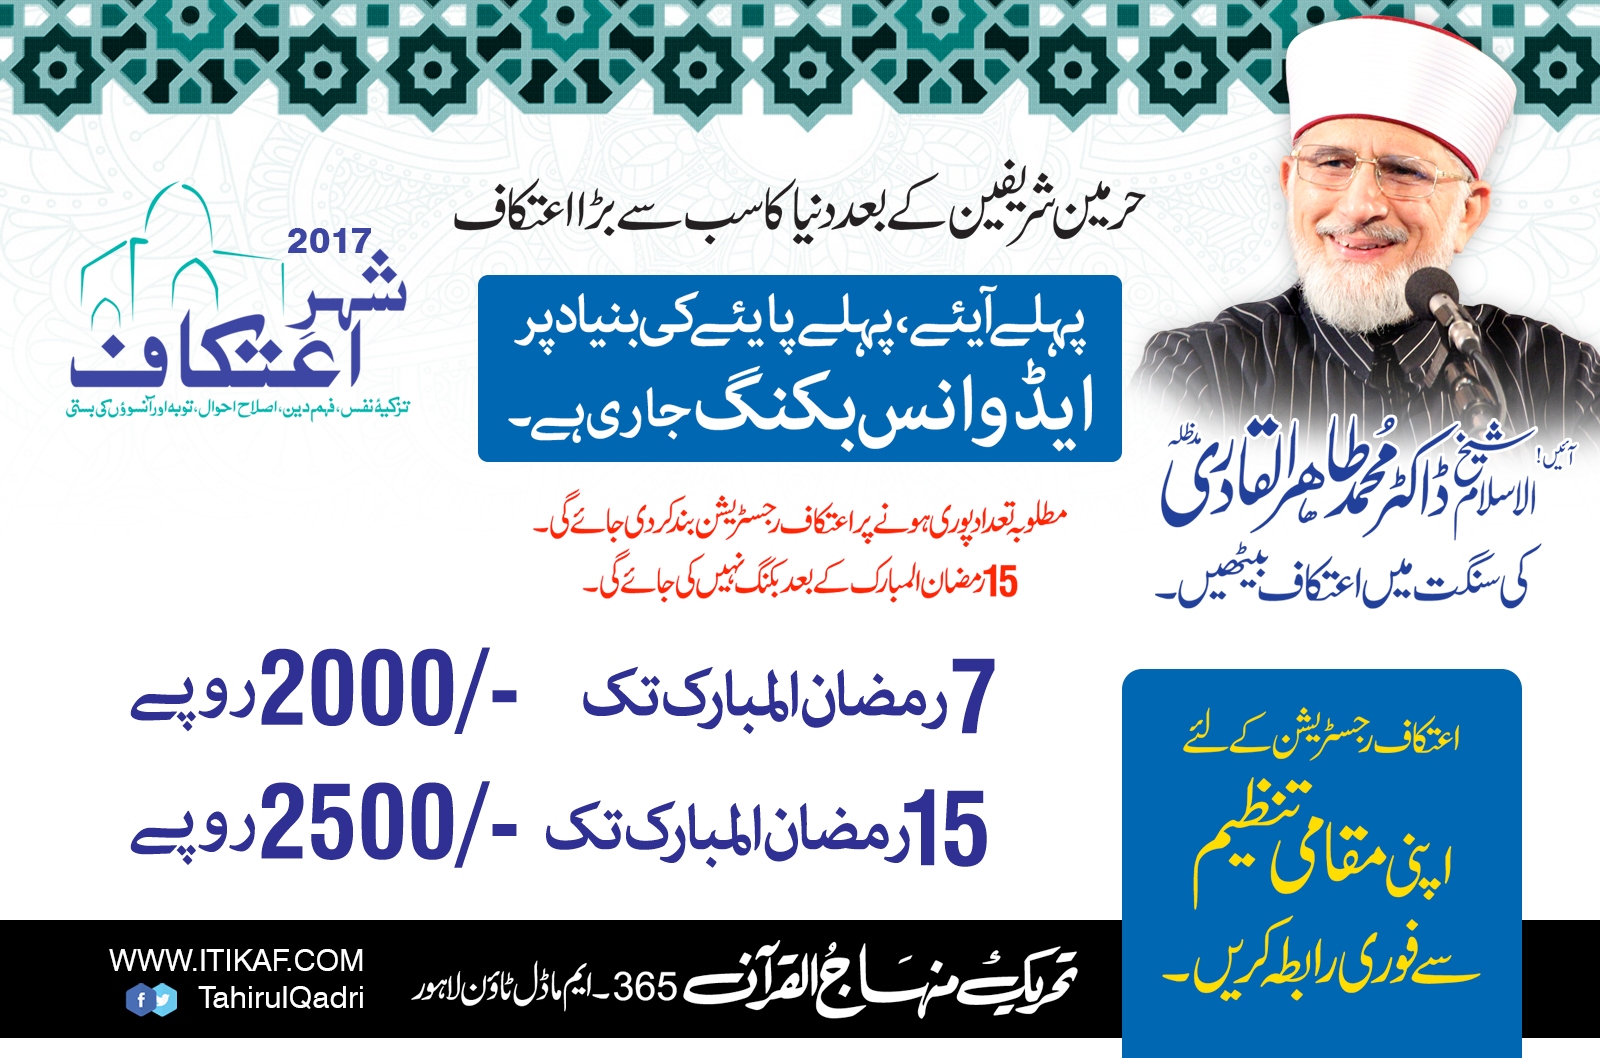 Minhaj-ul-Quran Itikaf 2017 Registration started